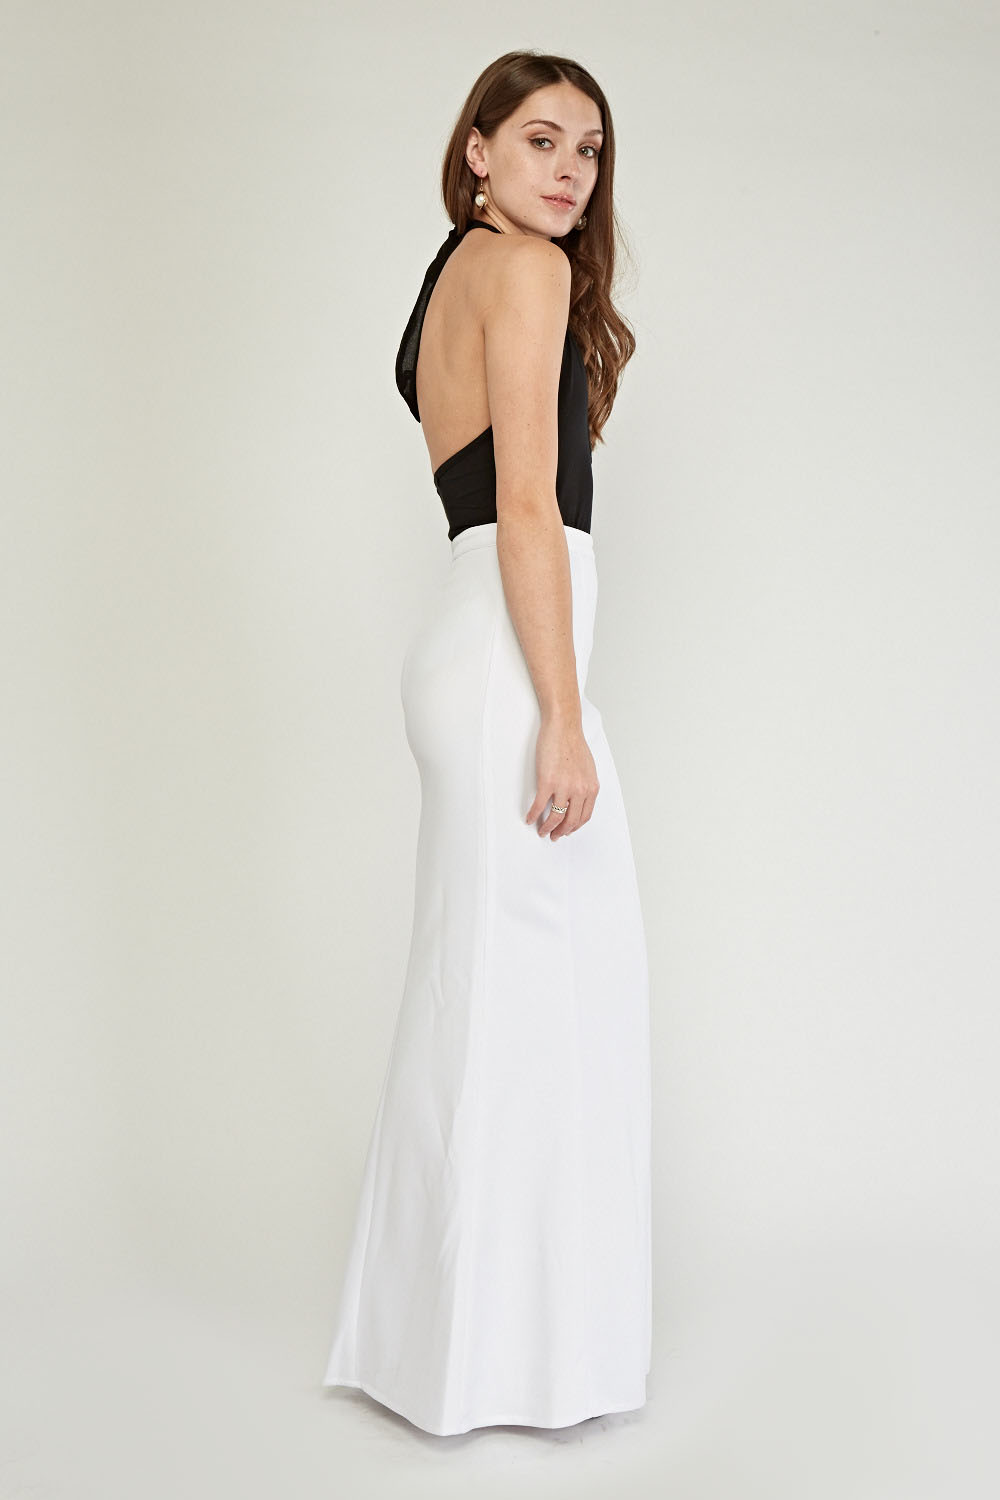 Basic White Maxi Skirt - Just $7